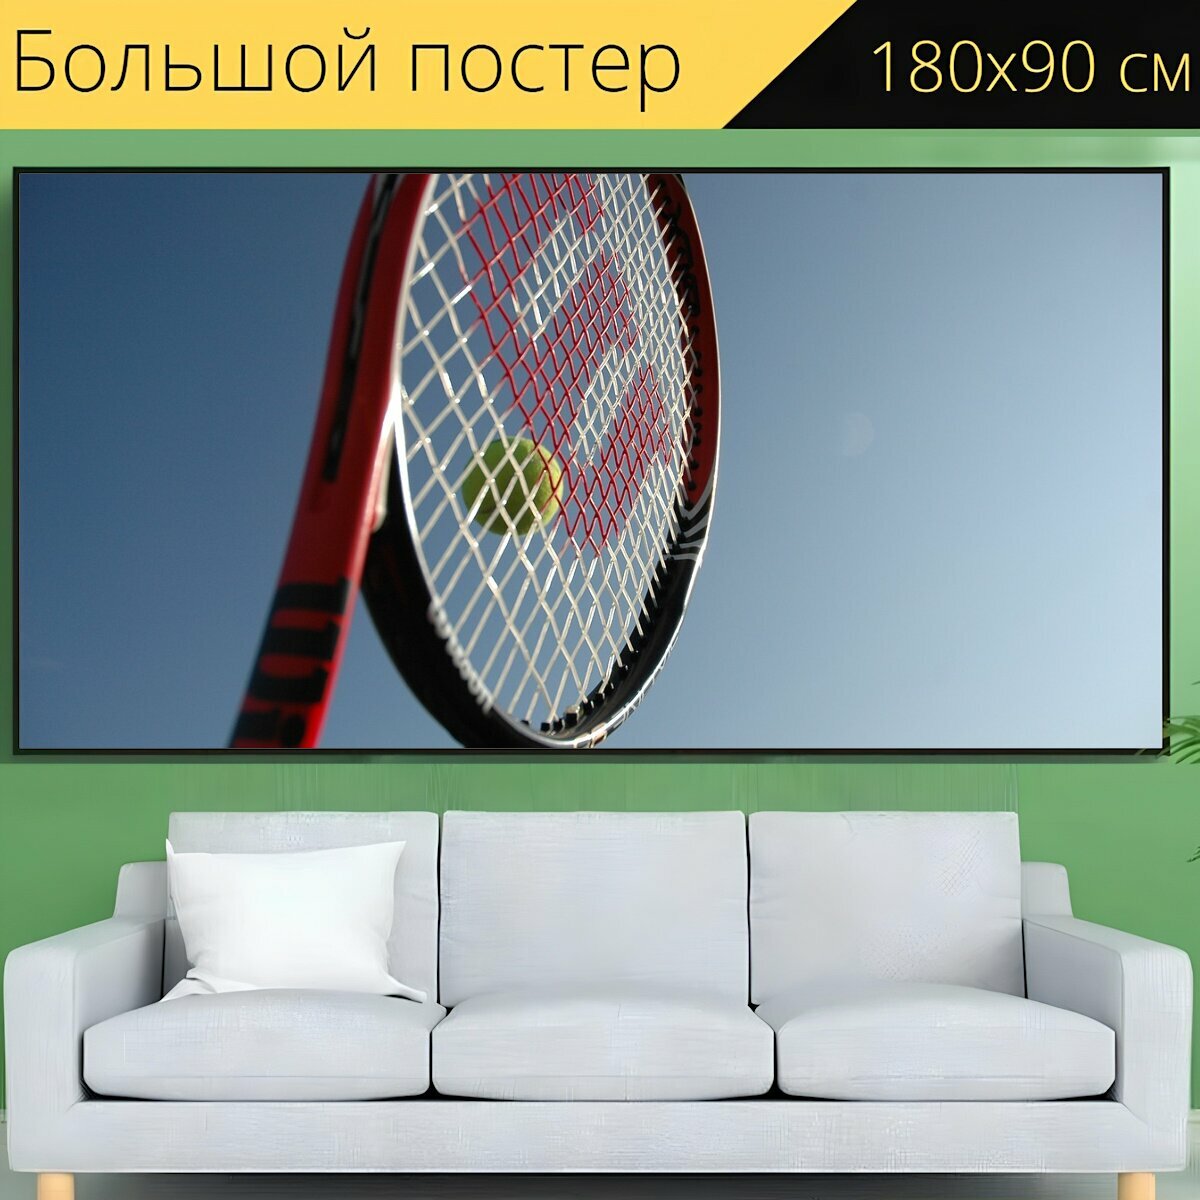 Большой постер "Уилсон, теннисные ракетки, джонатан марксоном теннис" 180 x 90 см. для интерьера